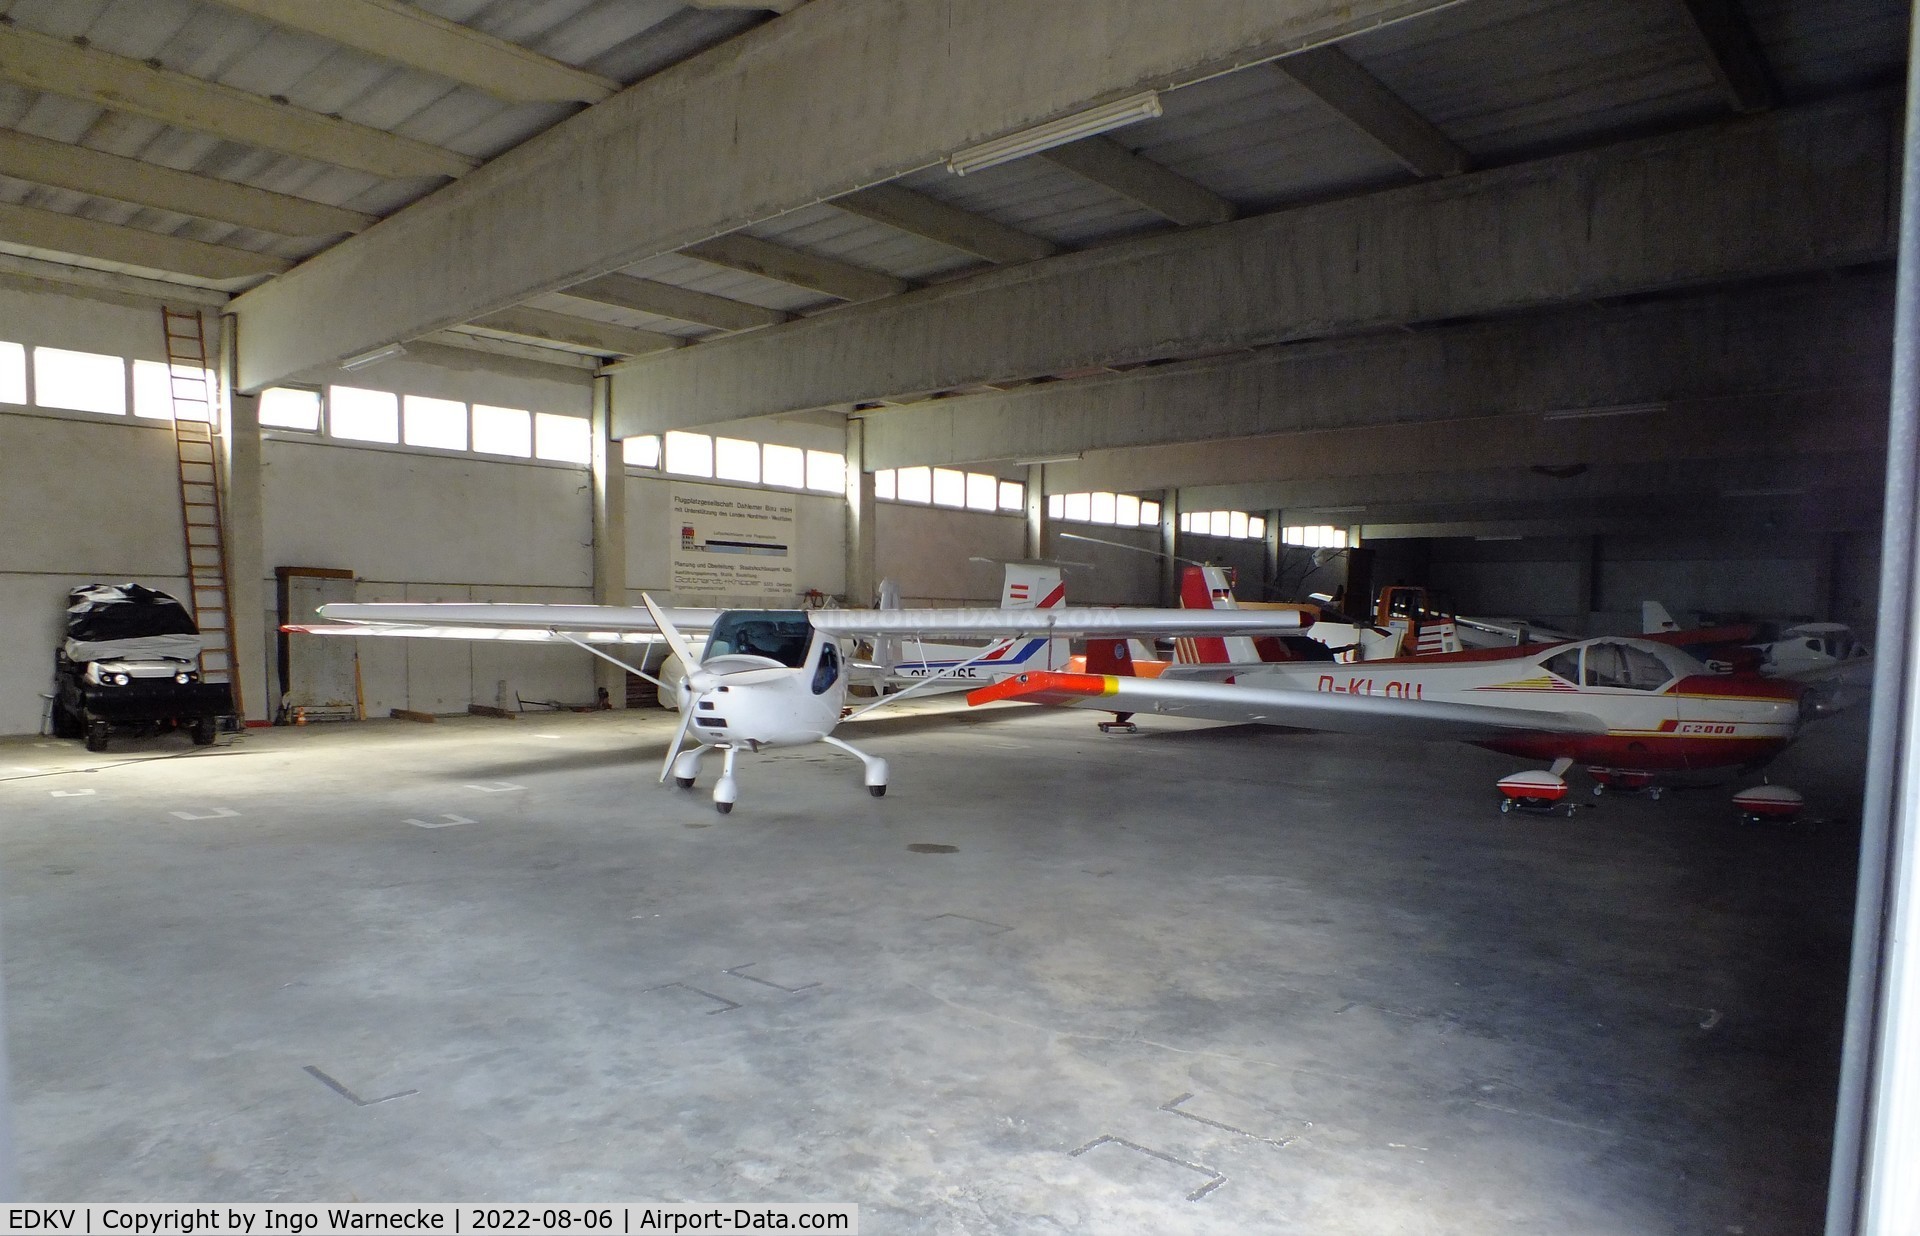 Dahlemer Binz Airport, Dahlem Germany (EDKV) - a look inside a hangar at Dahlemer Binz airfield